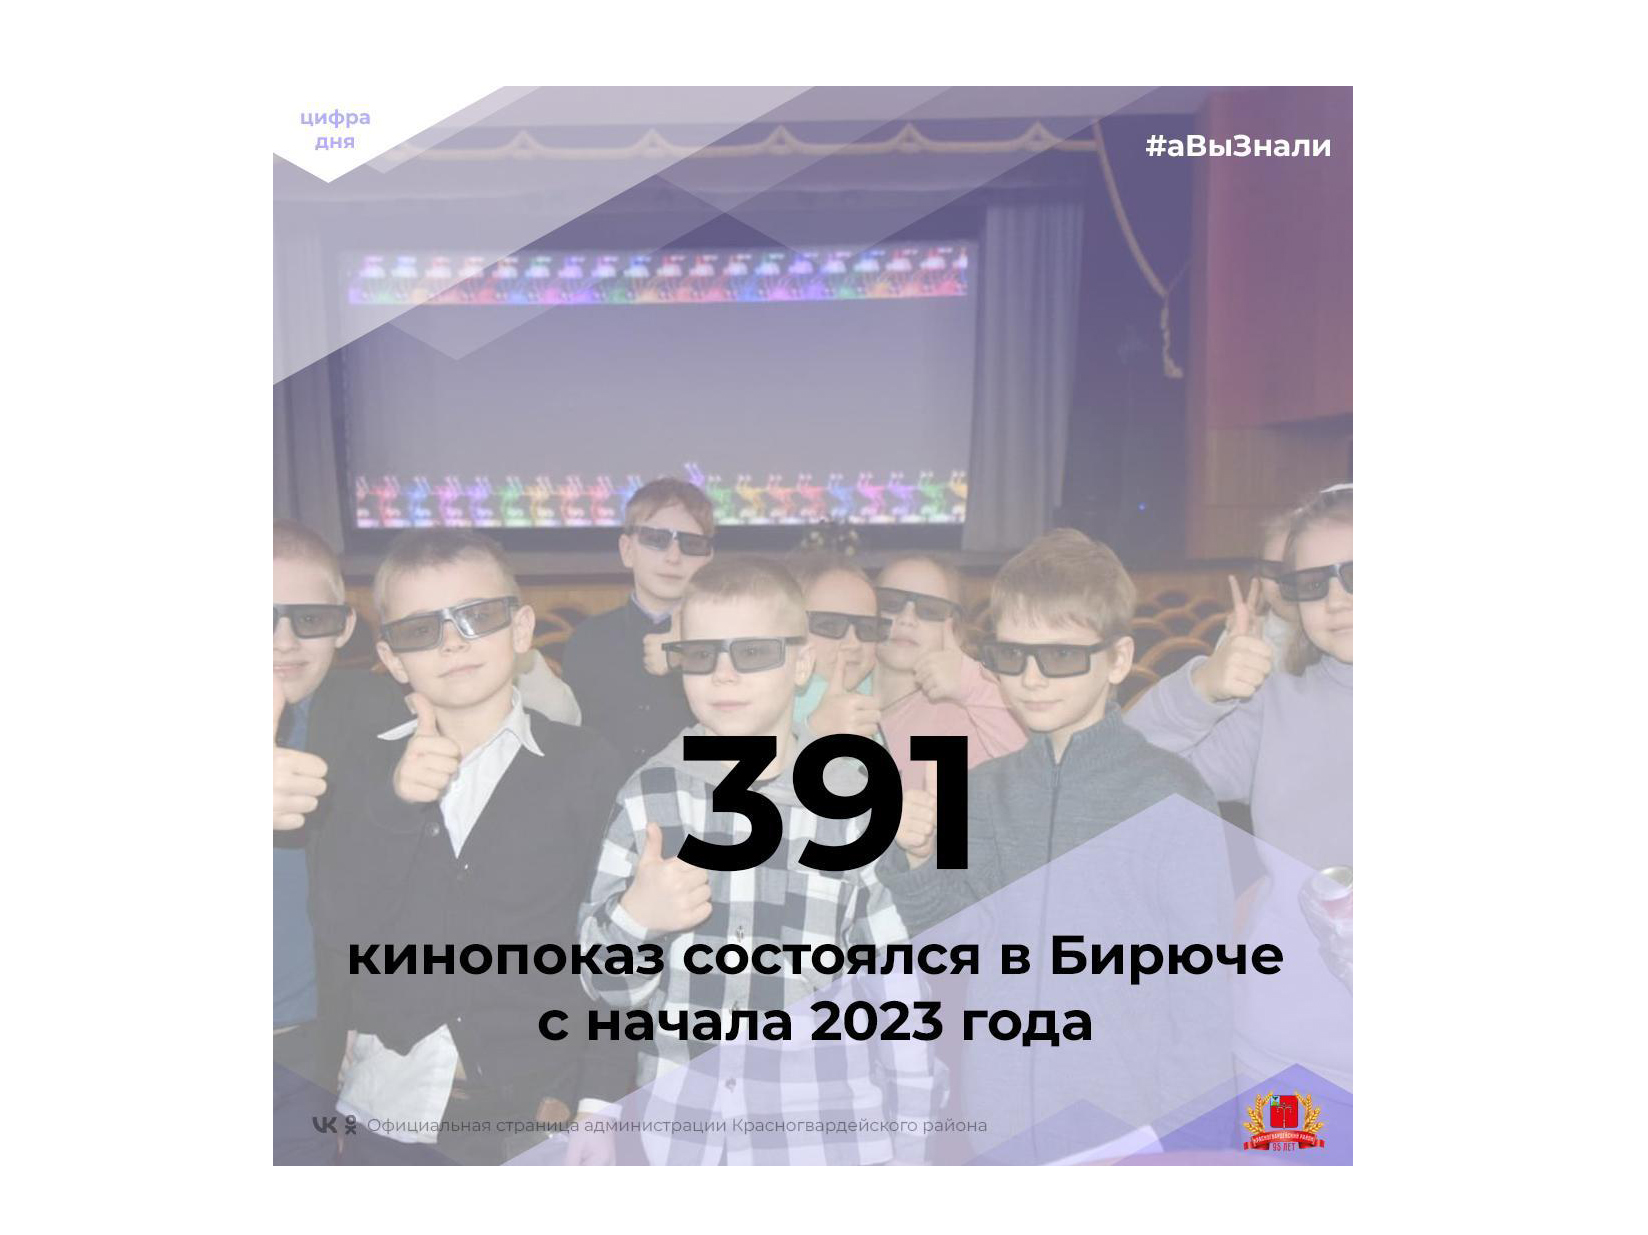 #аВыЗнали, что с начала 2023 года в Бирюче состоялся 391 кинопоказ?.